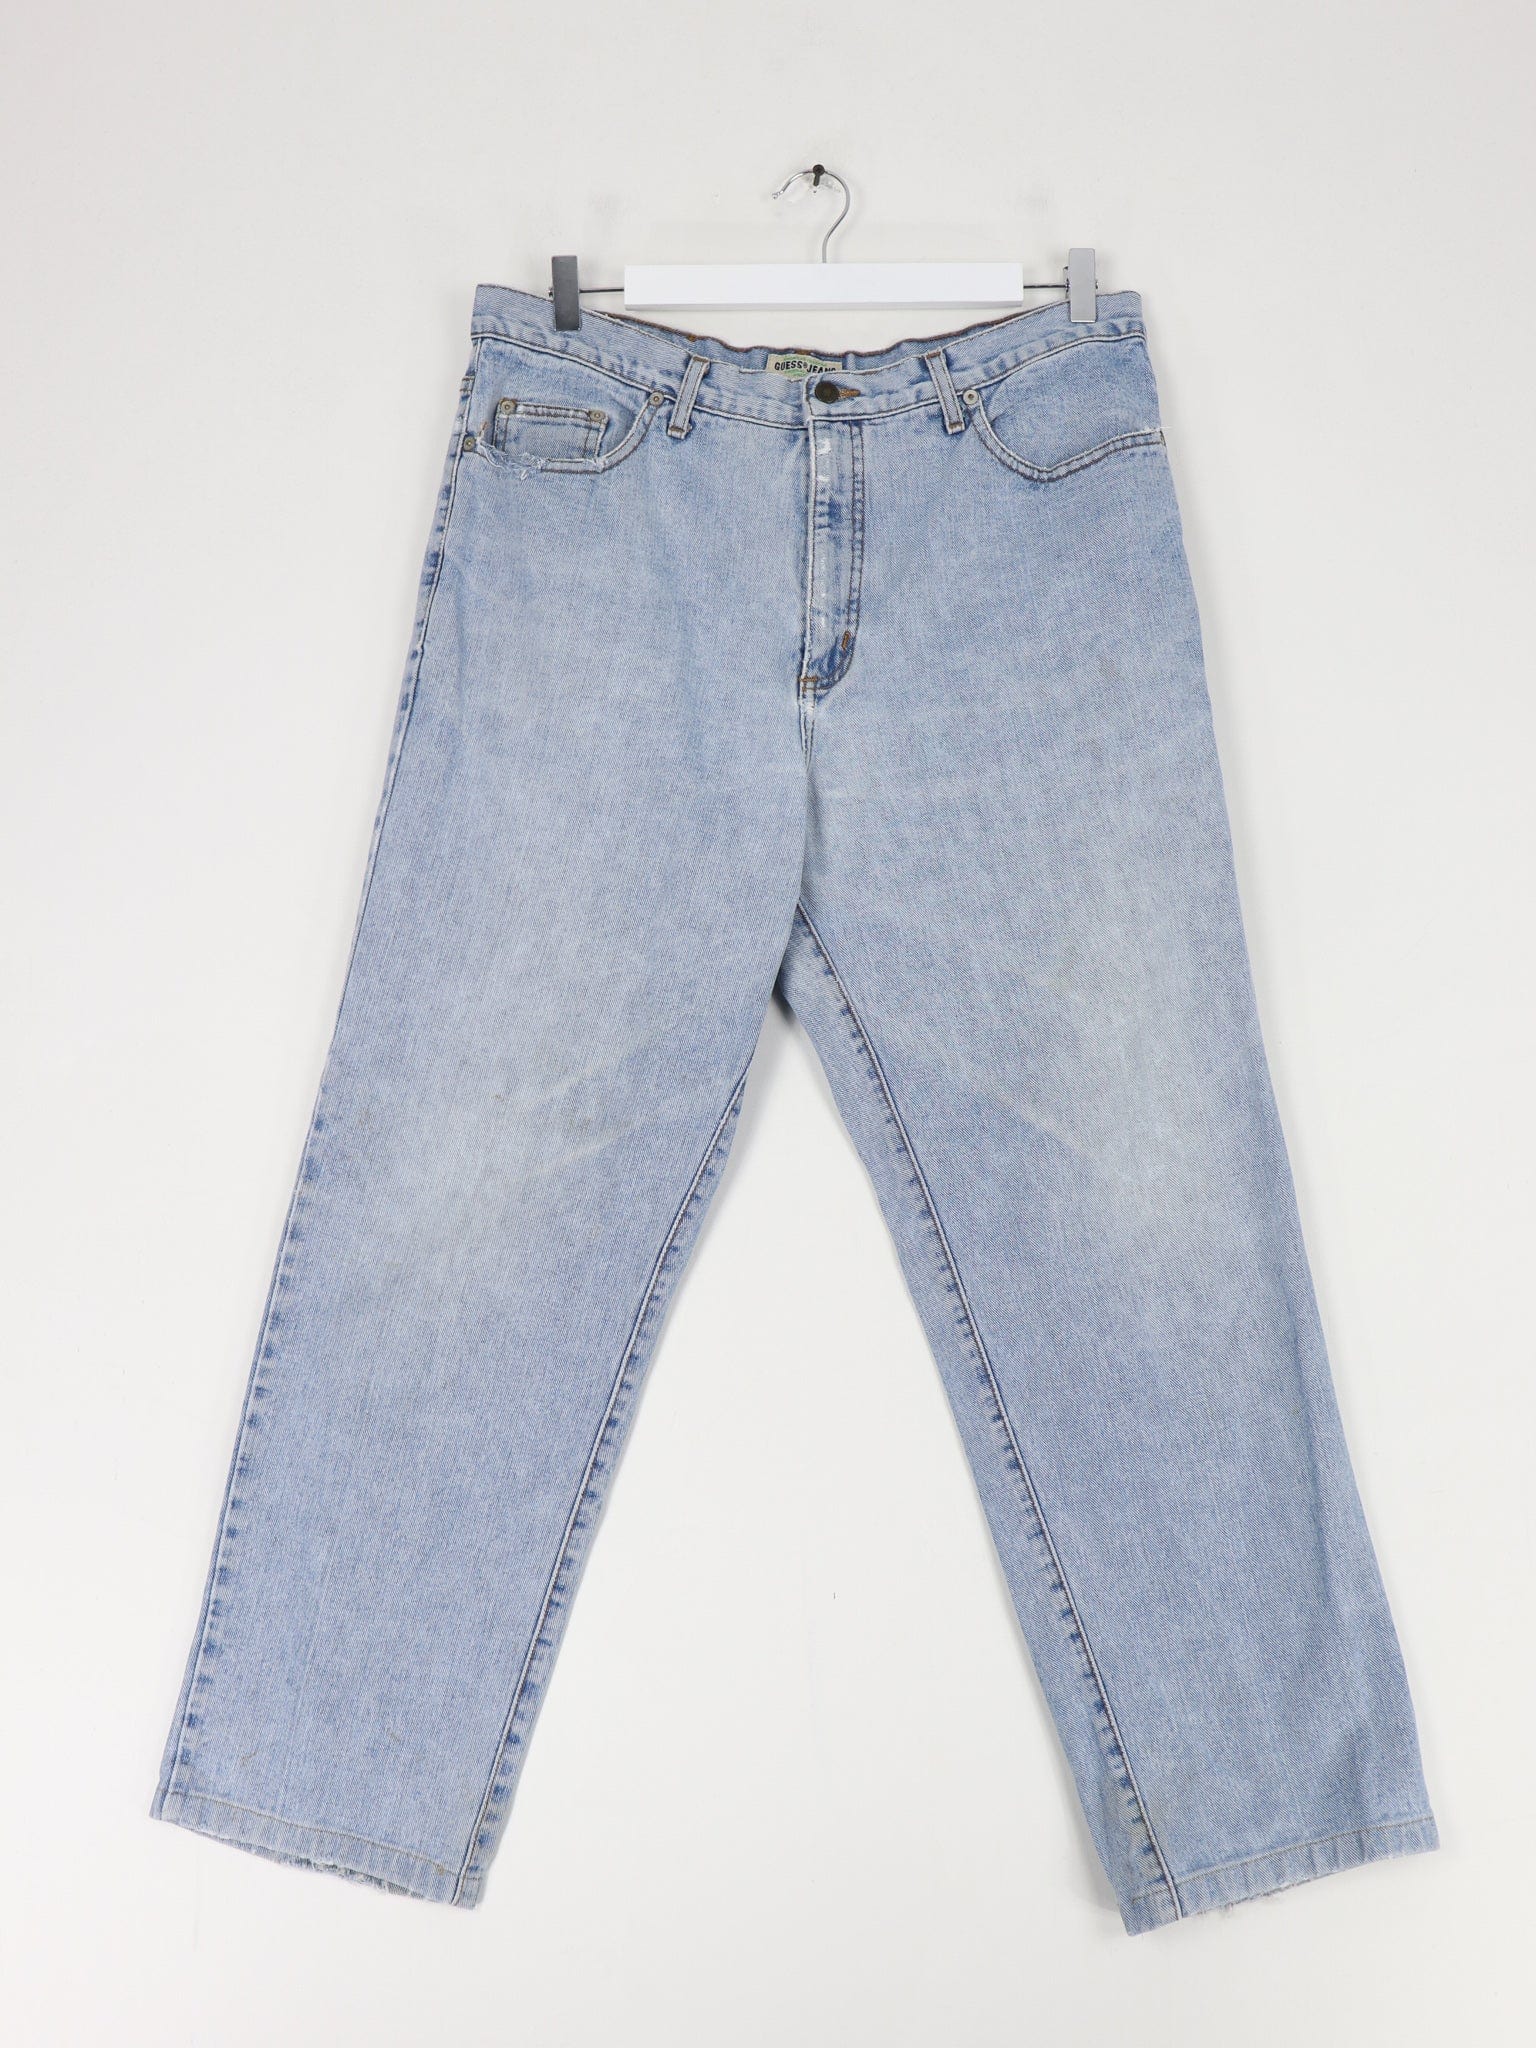 Vintage Guess Pants Fits Men's 36x28 Blue Casual Denim Jeans